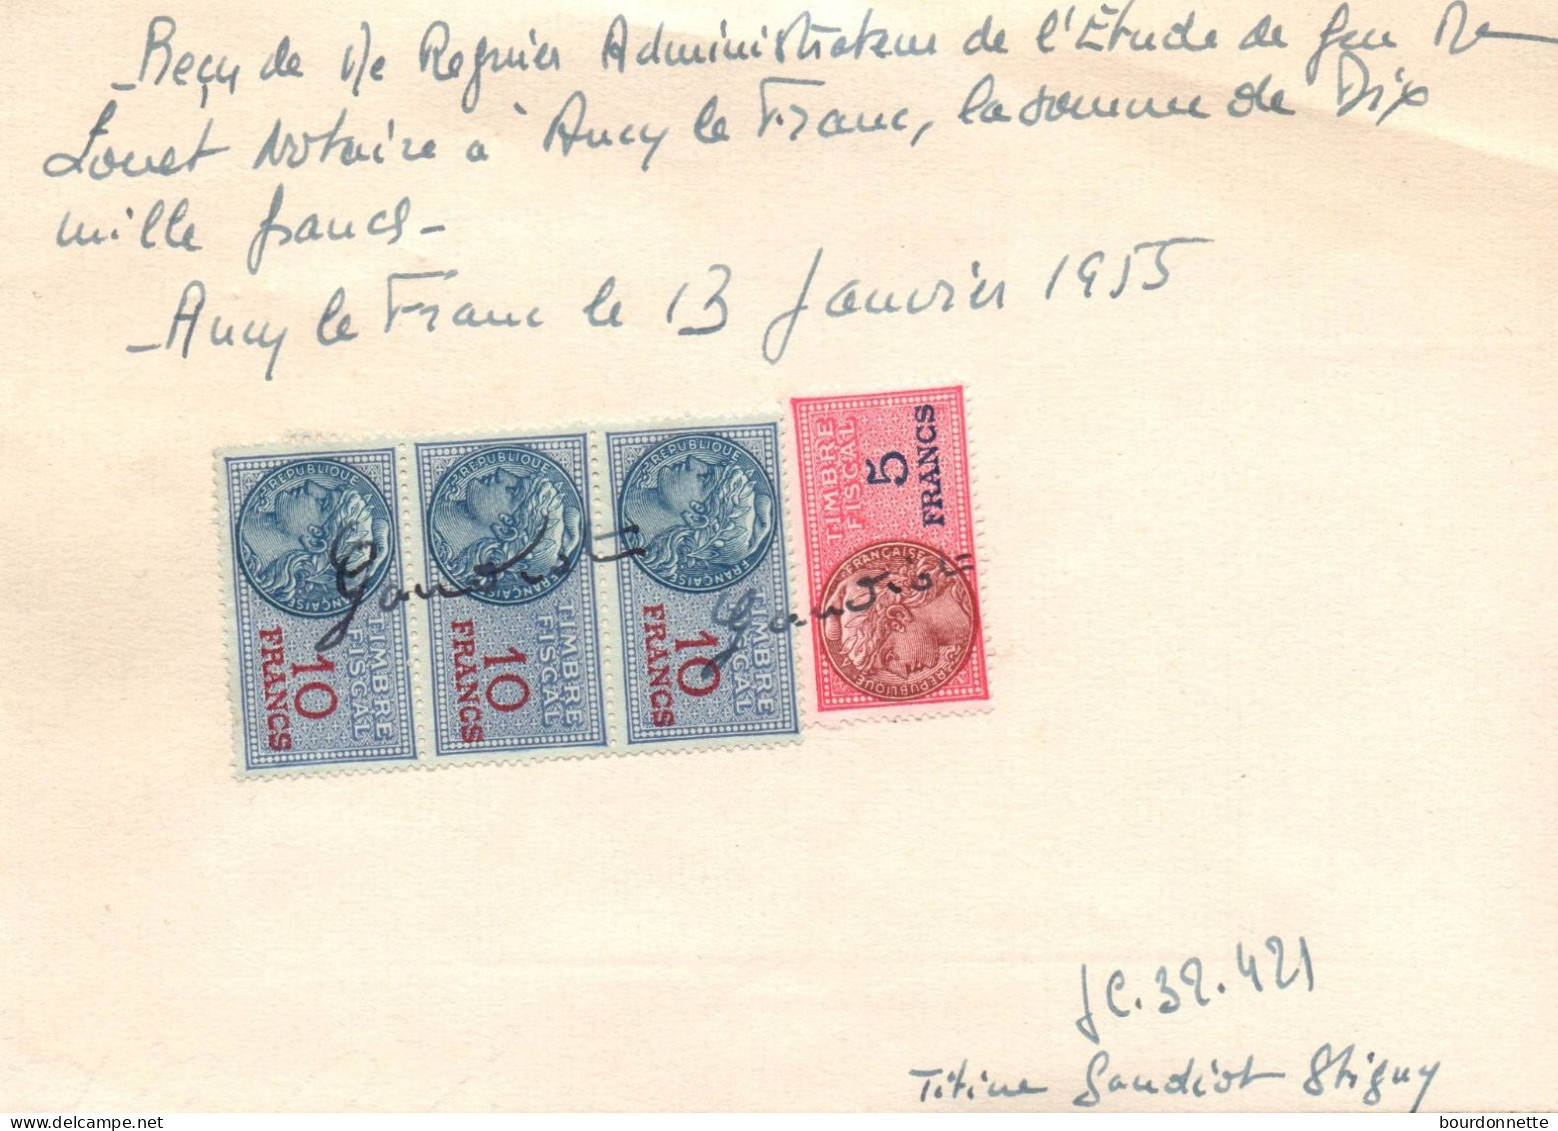 TIMBRES FISCAUX Sur Documents Ancy Le Franc Yonne 1955 STIGNY - Covers & Documents